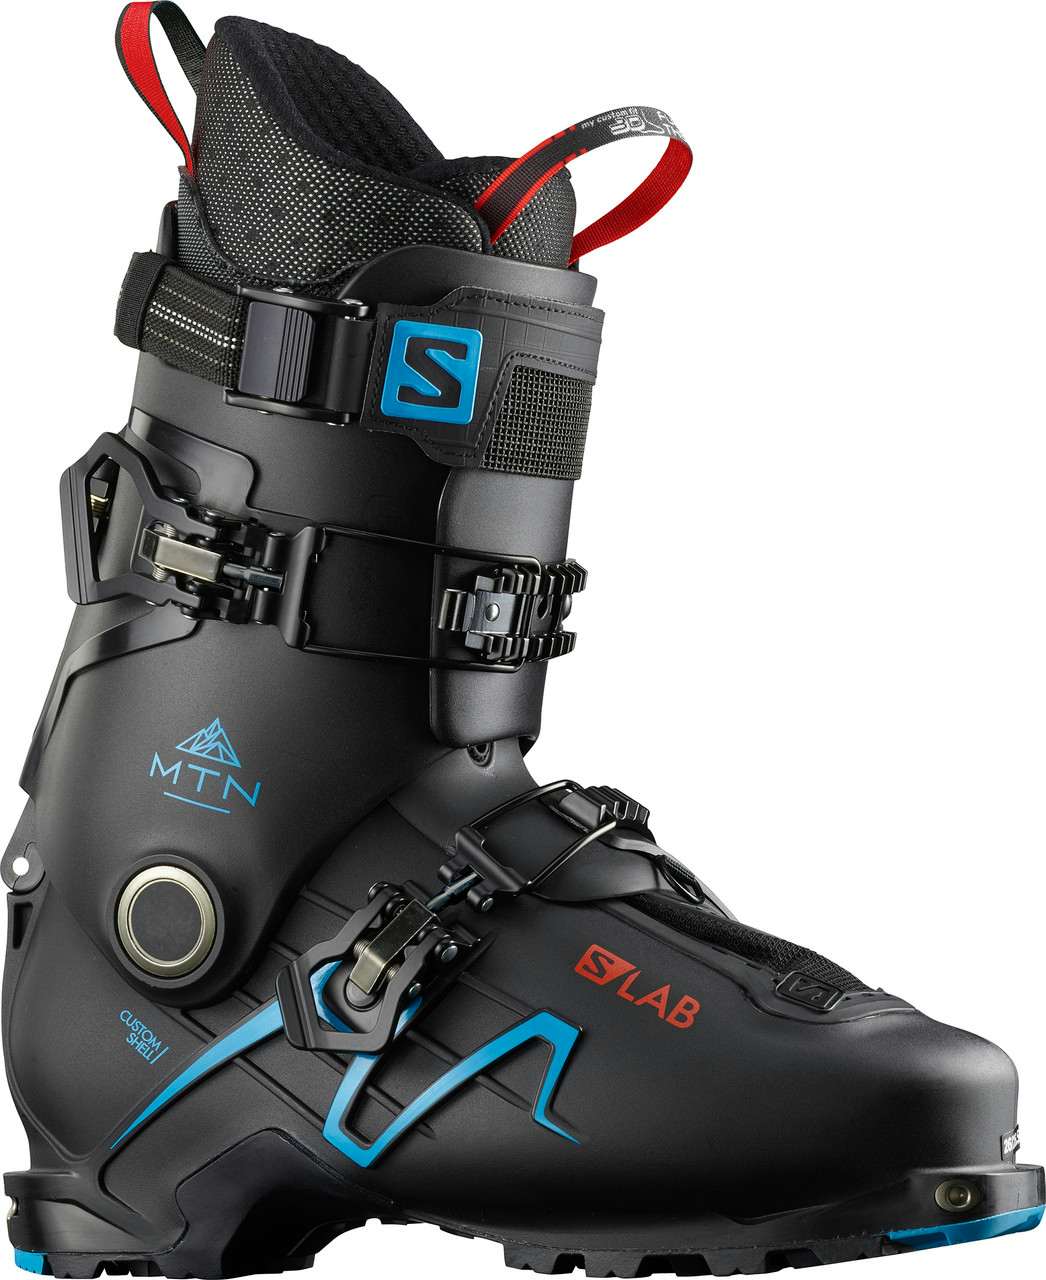 S/Lab Mtn Ski Boots Black/Transcend Blue